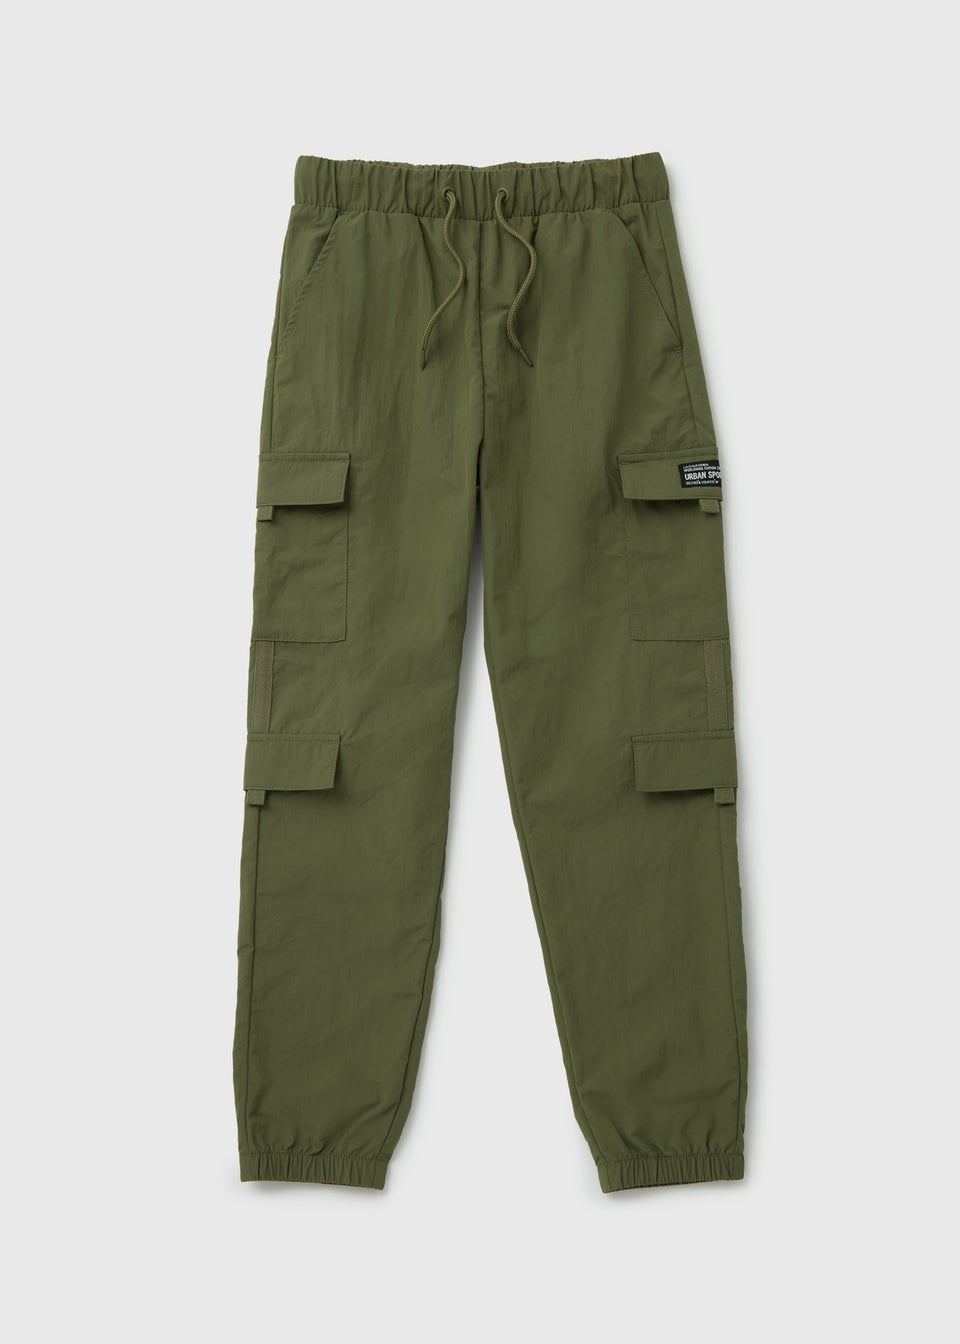 Boys Khaki Parachute Pants (7-13yrs)